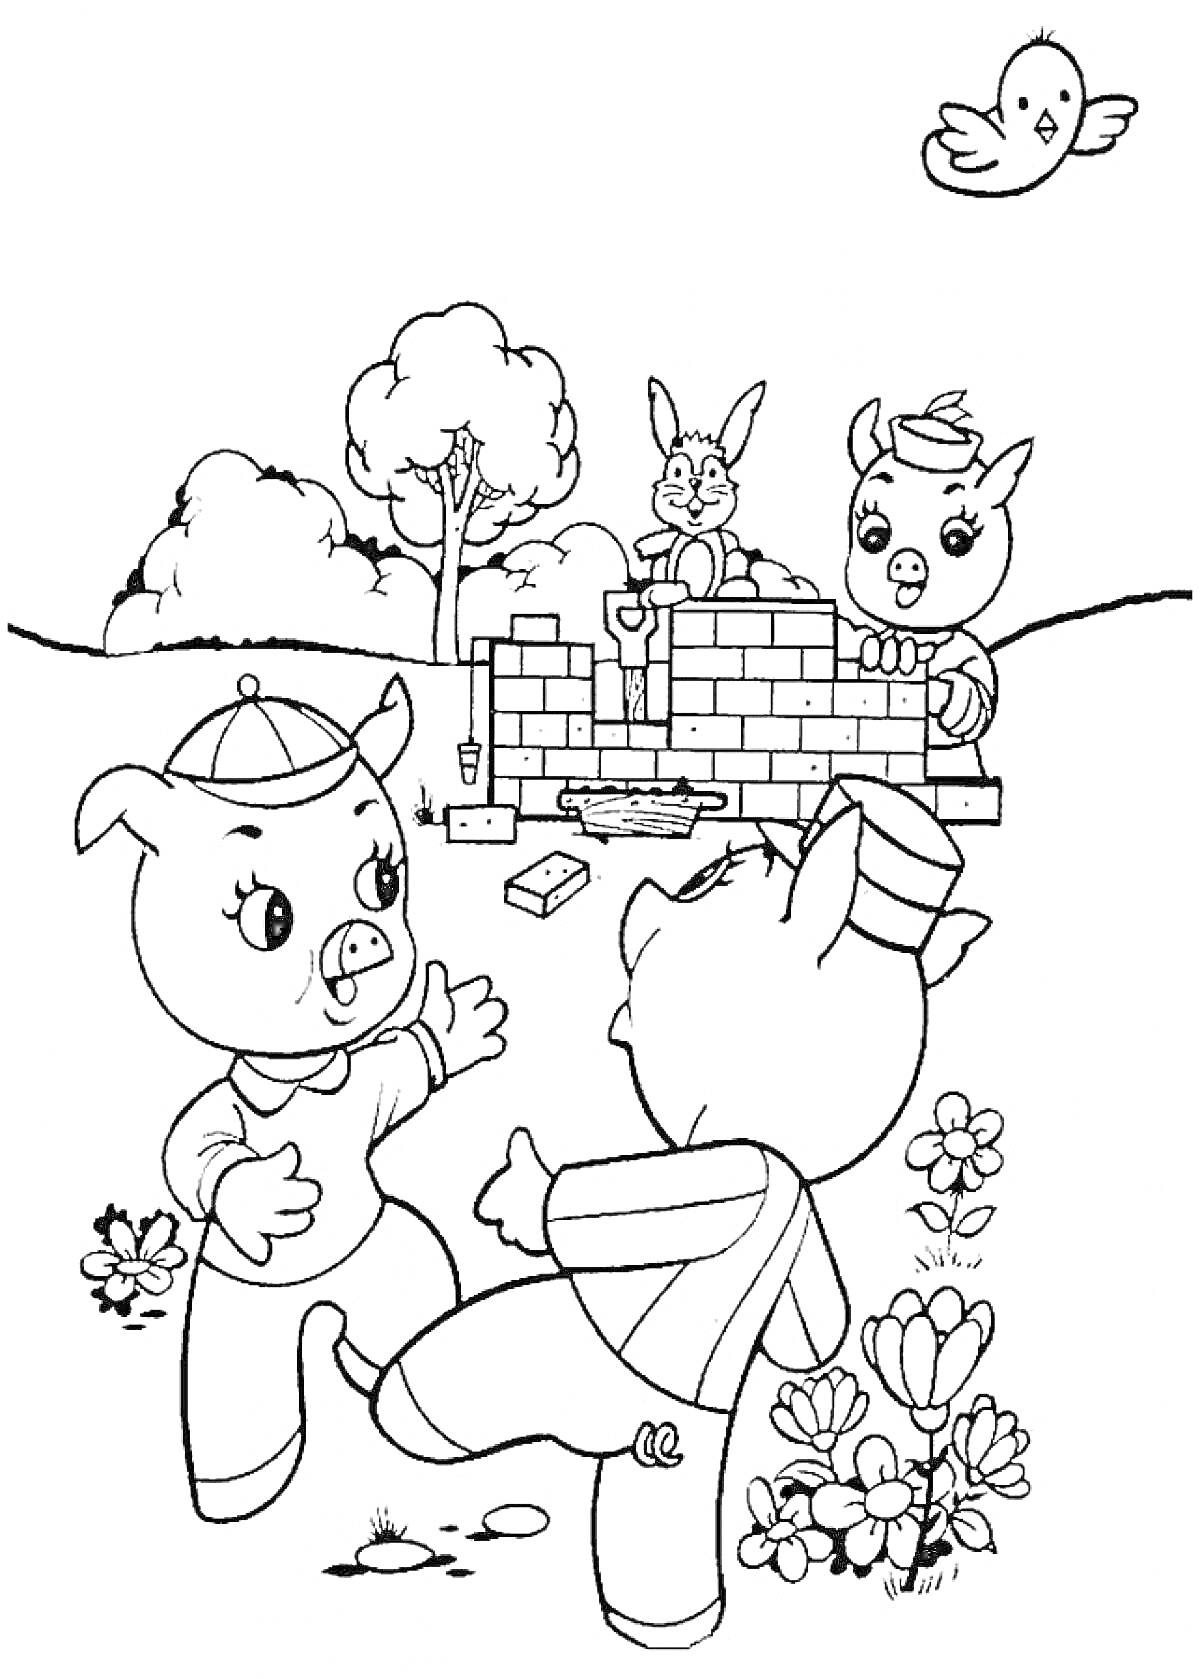 Два поросенка играют, третий поросенок строит кирпичную стену, рядом стоит заяц, сверху летает птичка, дрова, лопата, дерево и цветы в окружающей среде